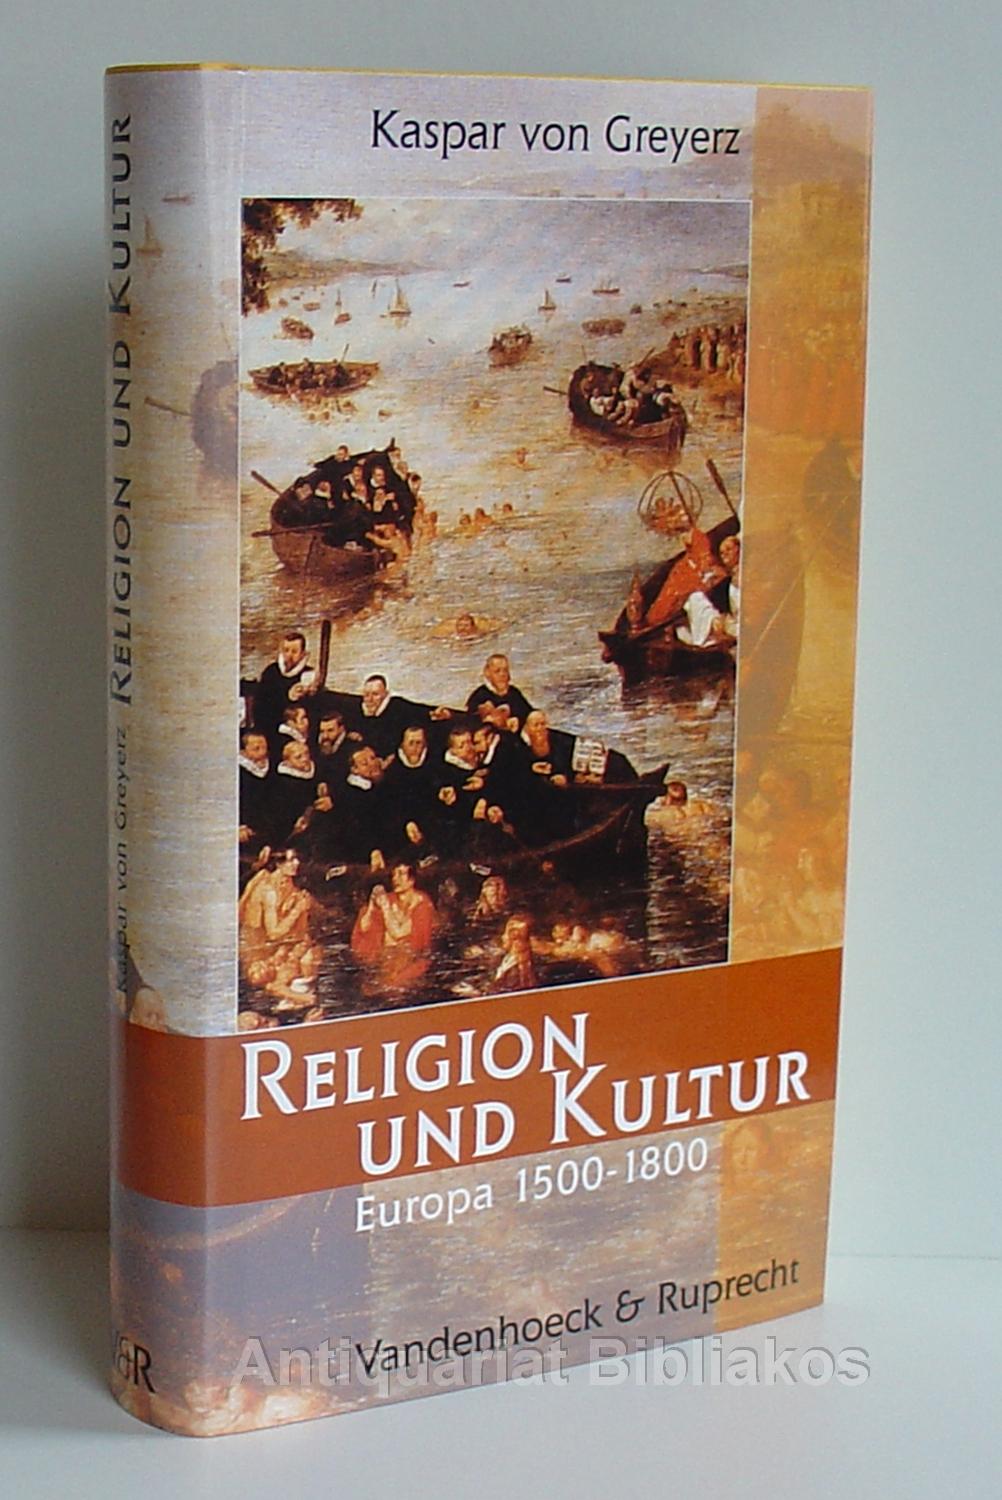 Religion und Kultur. Europa 1500 - 1800 (Handlungskompetenz Im Ausland)